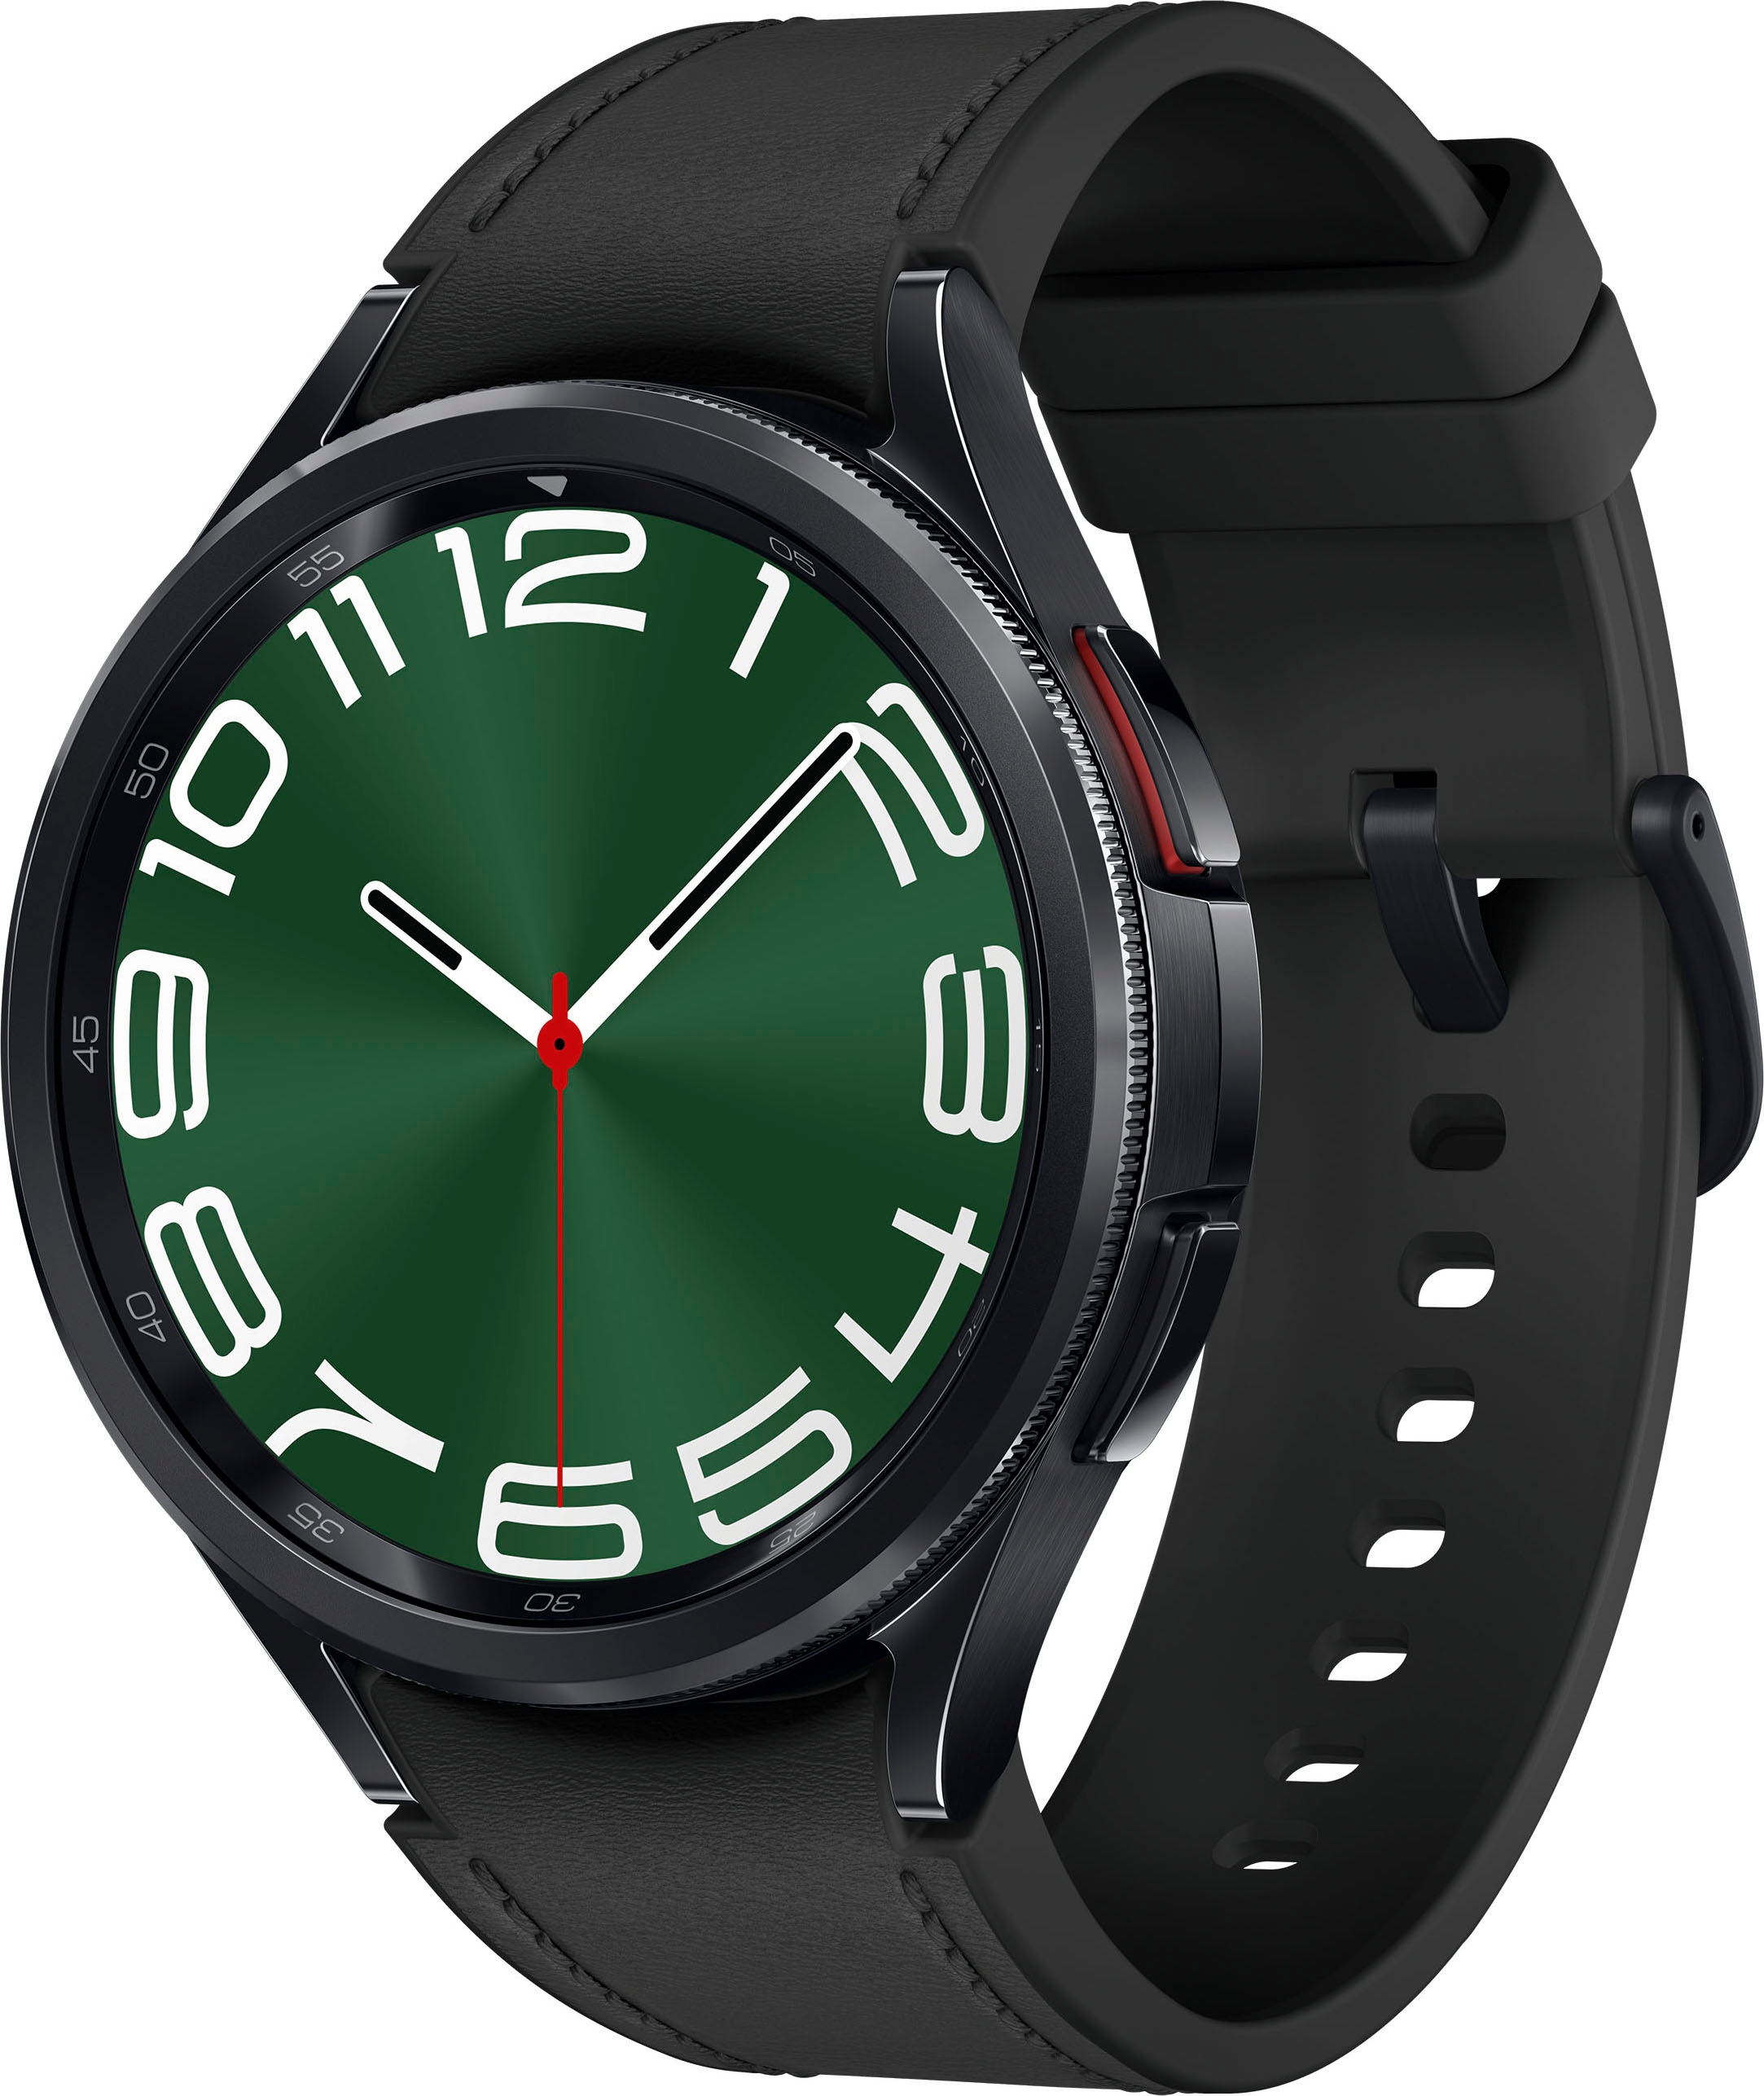 Samsung Smartwatch »Galaxy by (Wear 6 BAUR 47mm«, Samsung) Watch | Classic OS